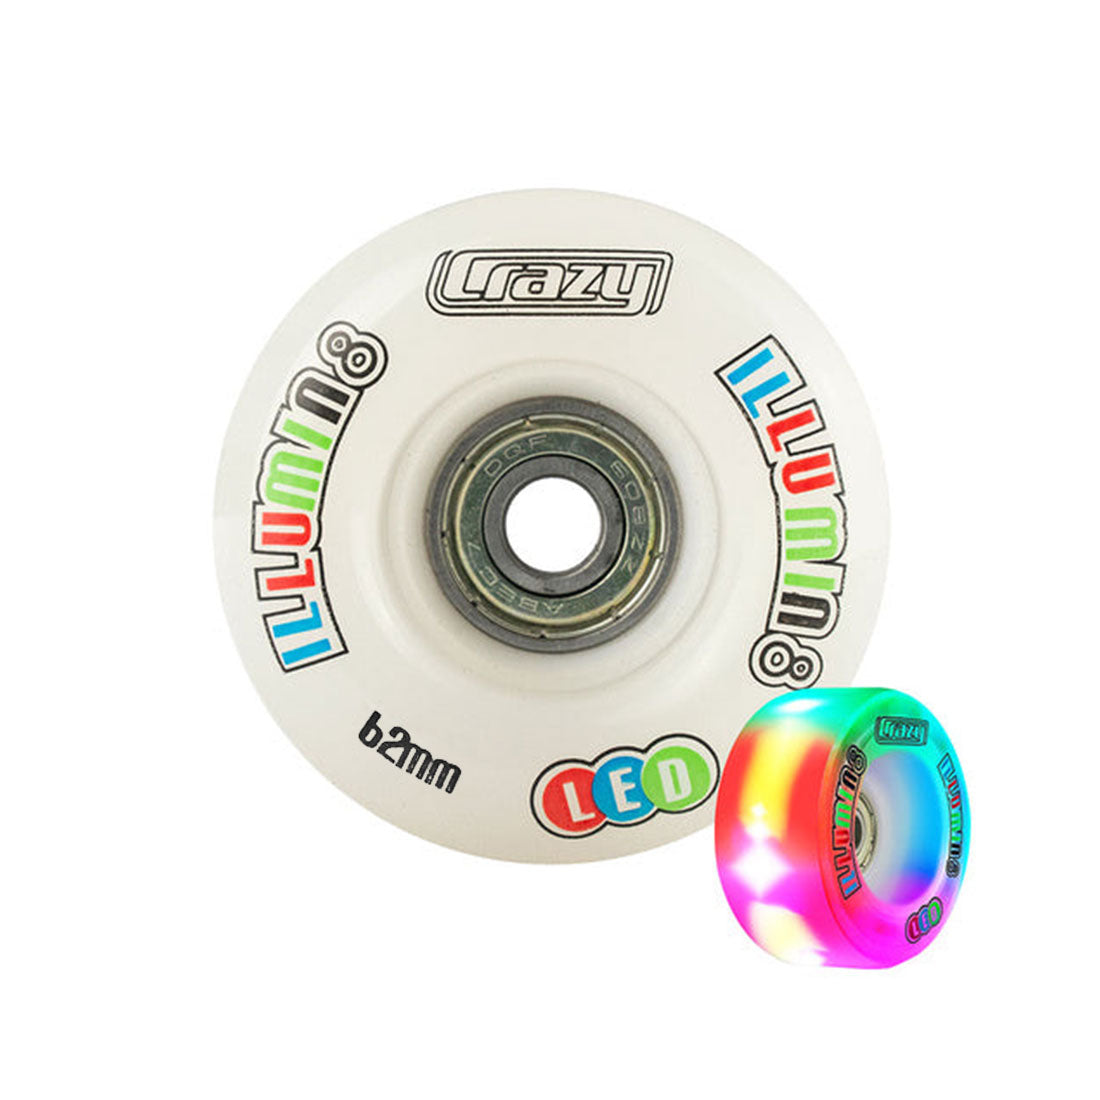 Crazy Illumin8 62mm LED Light Up Wheels 2pk White Roller Skate Wheels